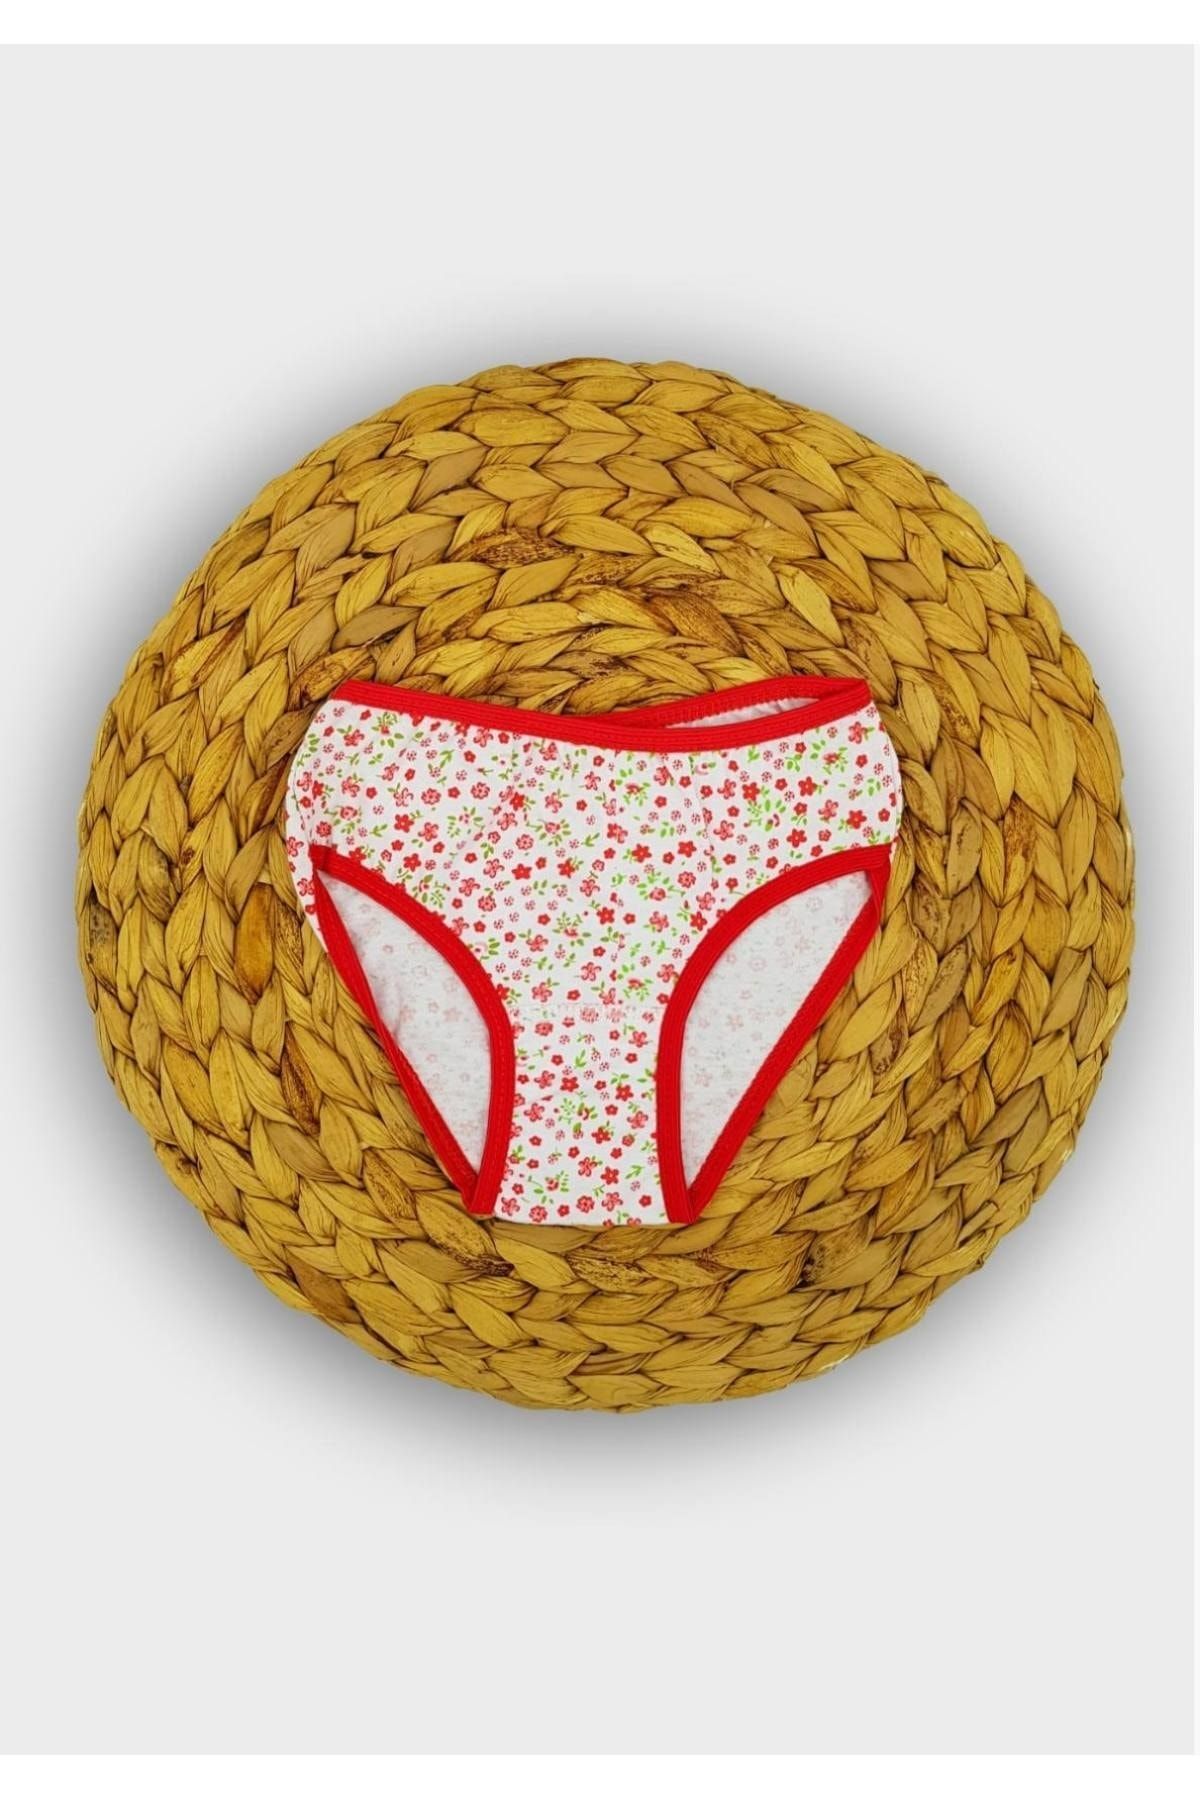 Seher Yıldızı Seher Kız Baskılı Bikini Kırmızı Yeni Sezon (6 Adet Ekonomik Paket)